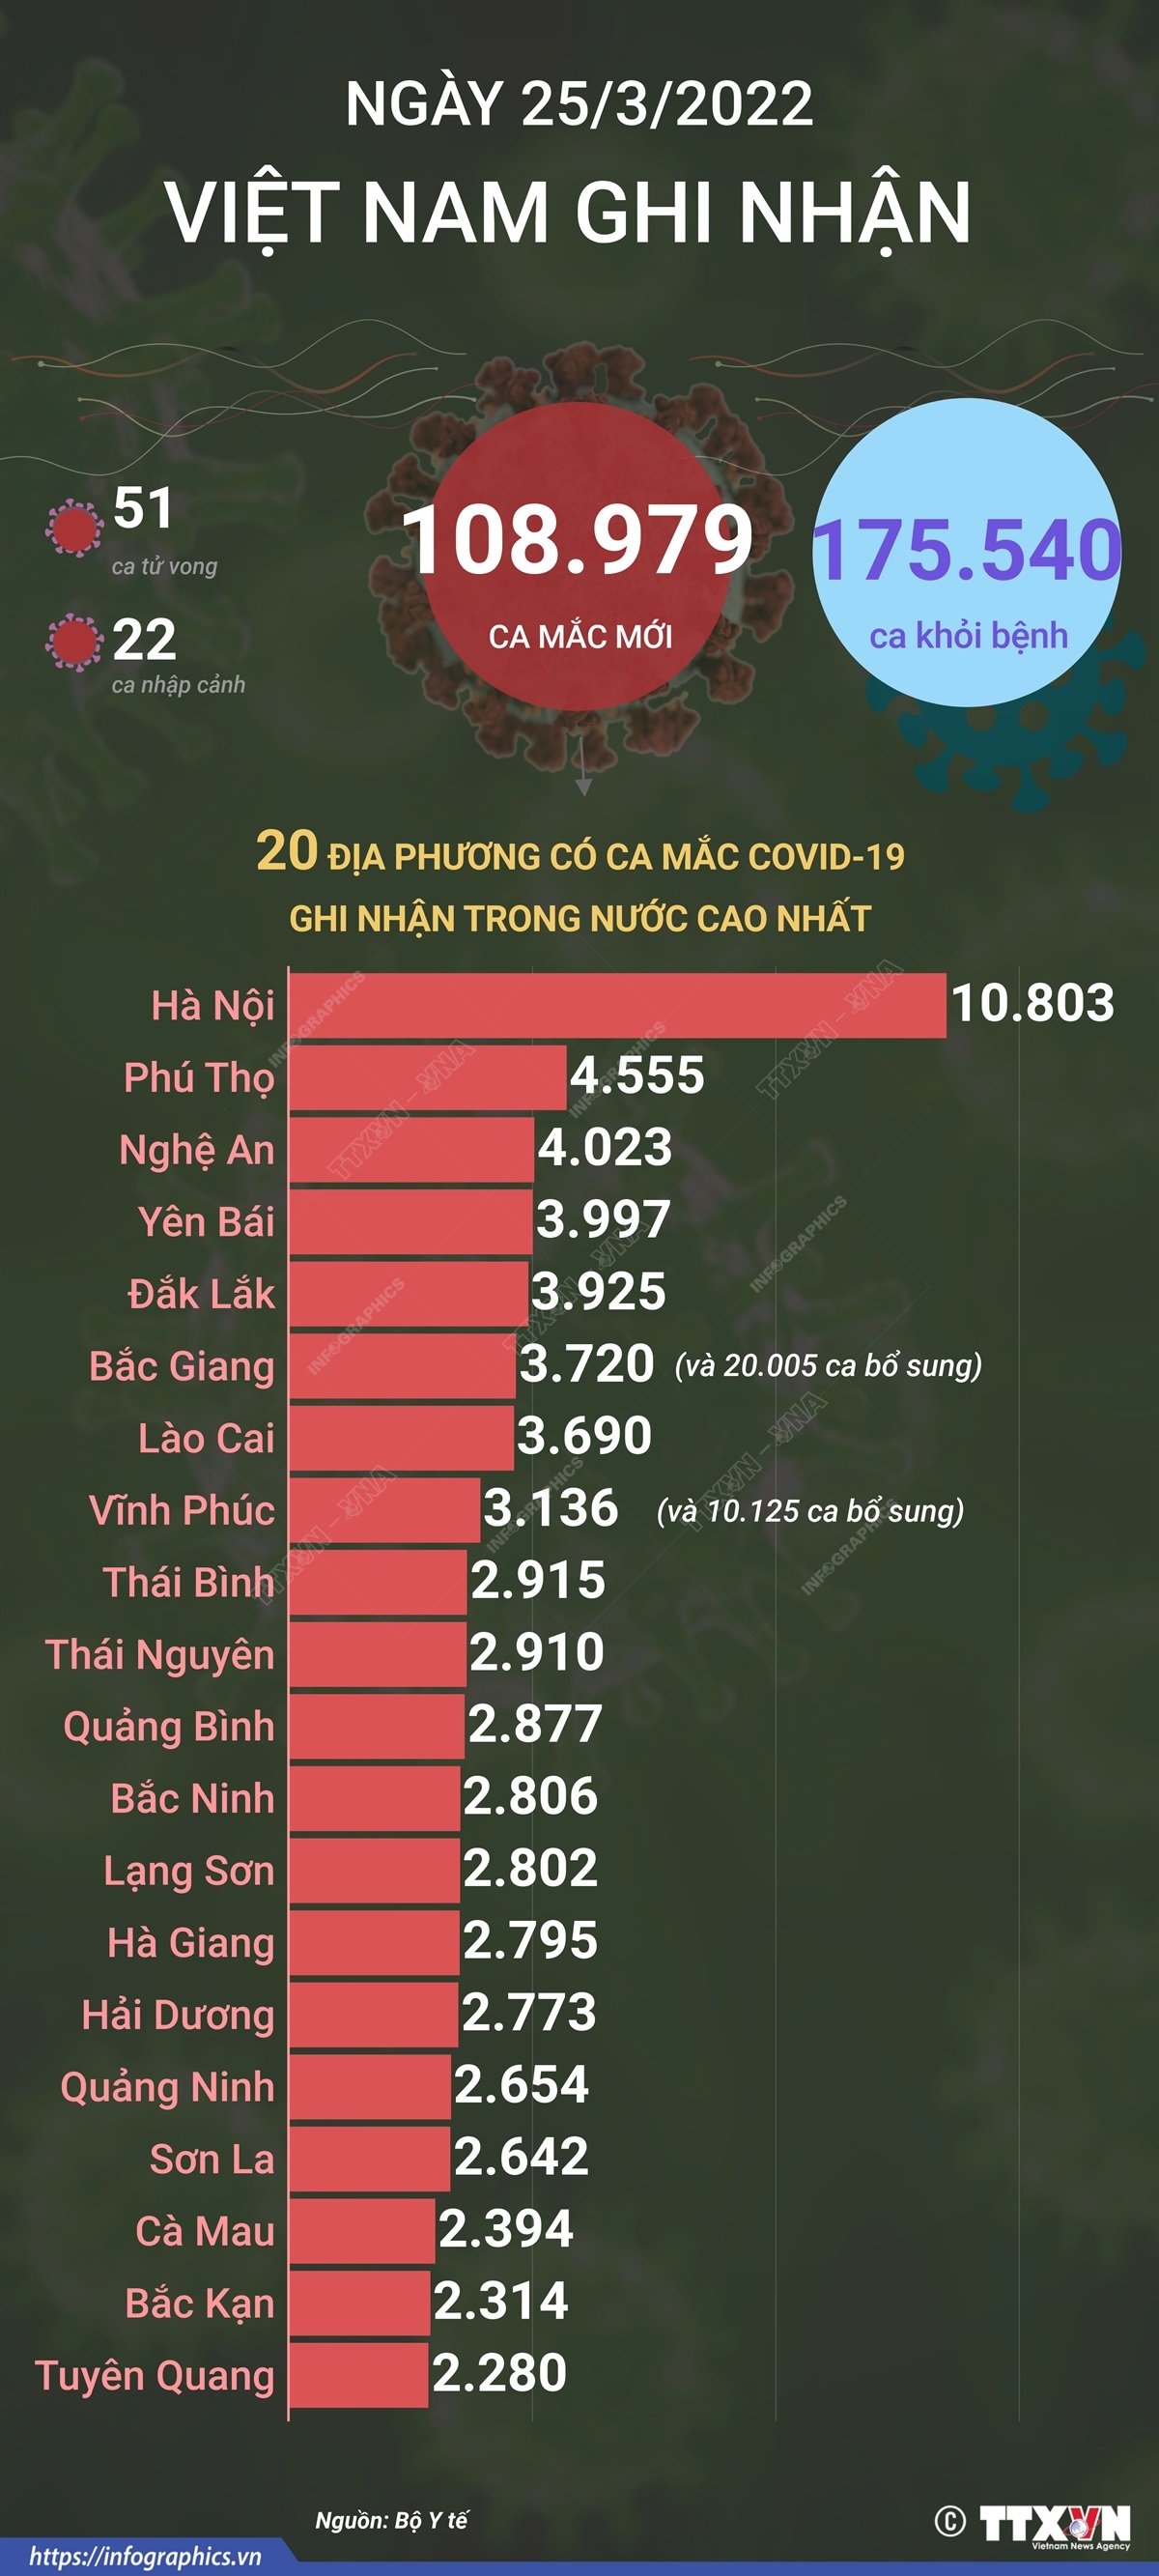 Ngày 25/3/2022, Việt Nam ghi nhận 108.979 ca mắc mới và 51 ca tử vong do COVID-19